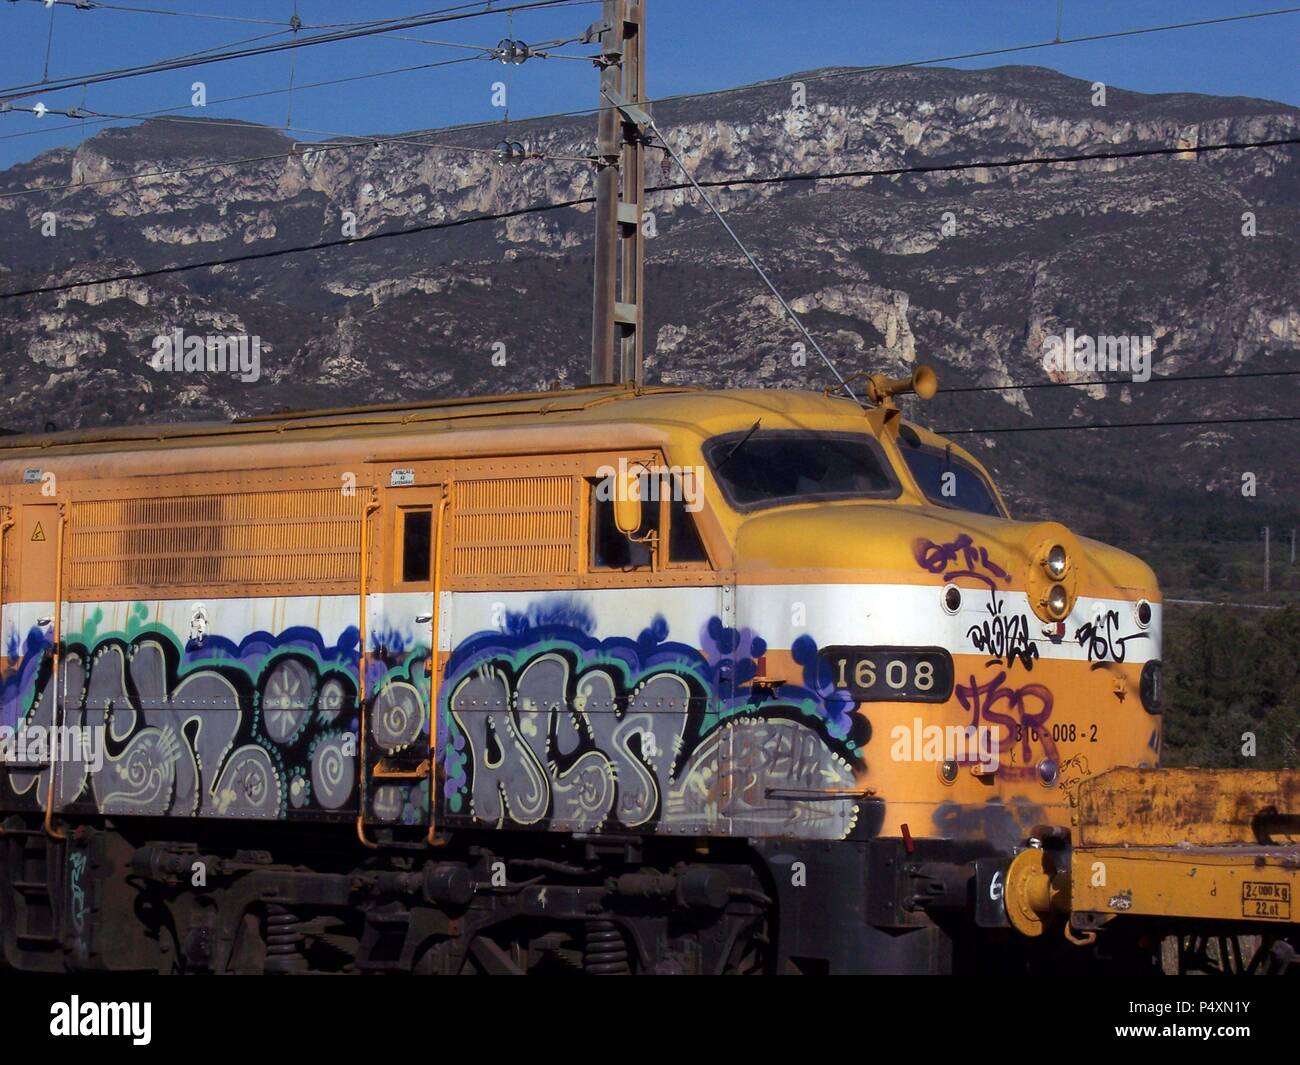 GRAFITIS en una locomotora. Stock Photo